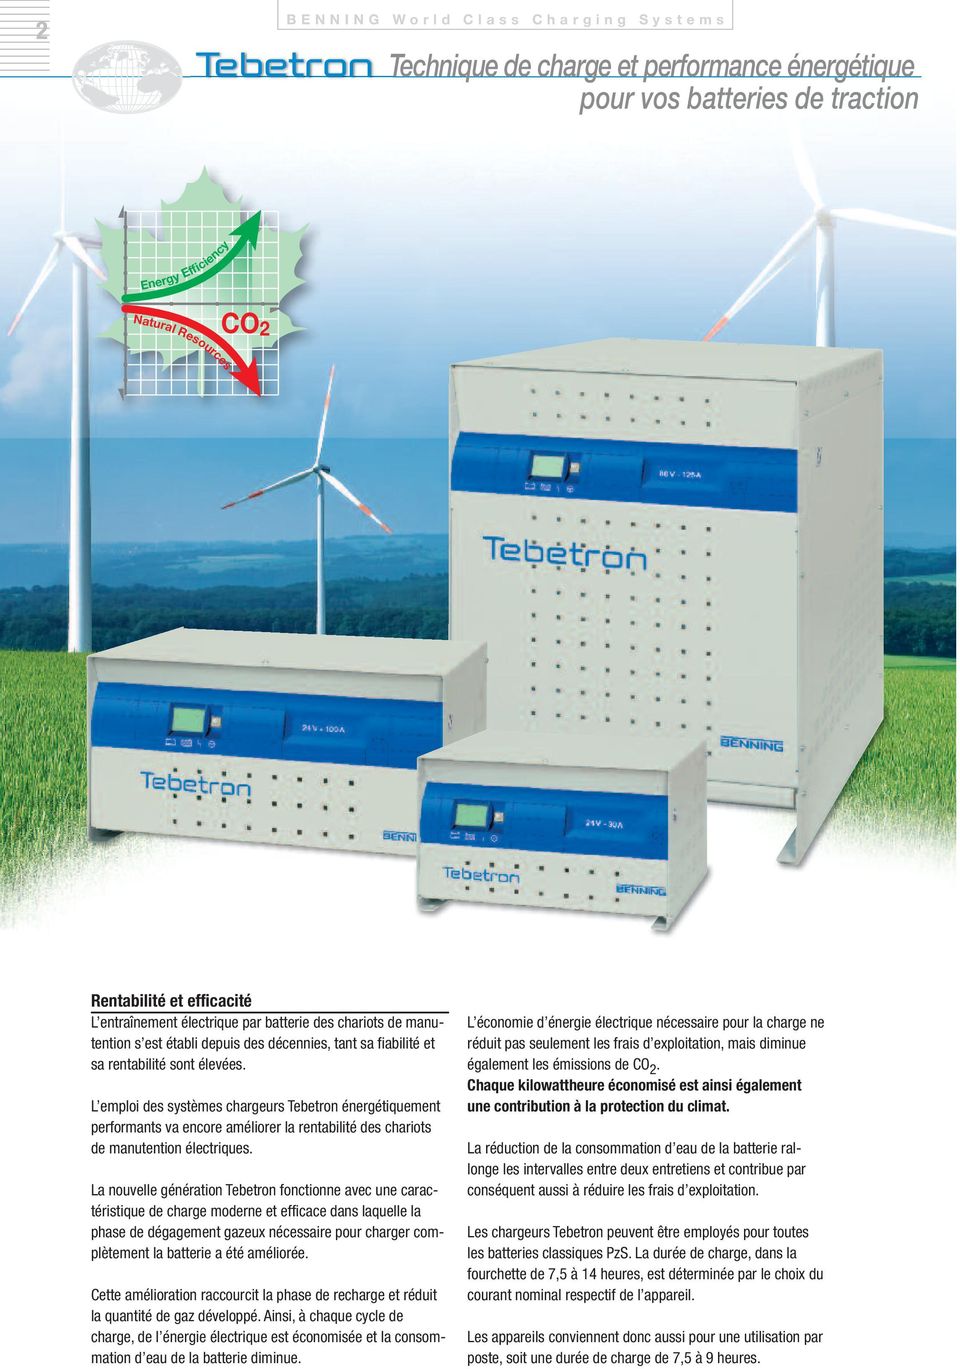 L emploi des systèmes chargeurs Tebetron énergétiquement performants va encore améliorer la rentabilité des chariots de manutention électriques.